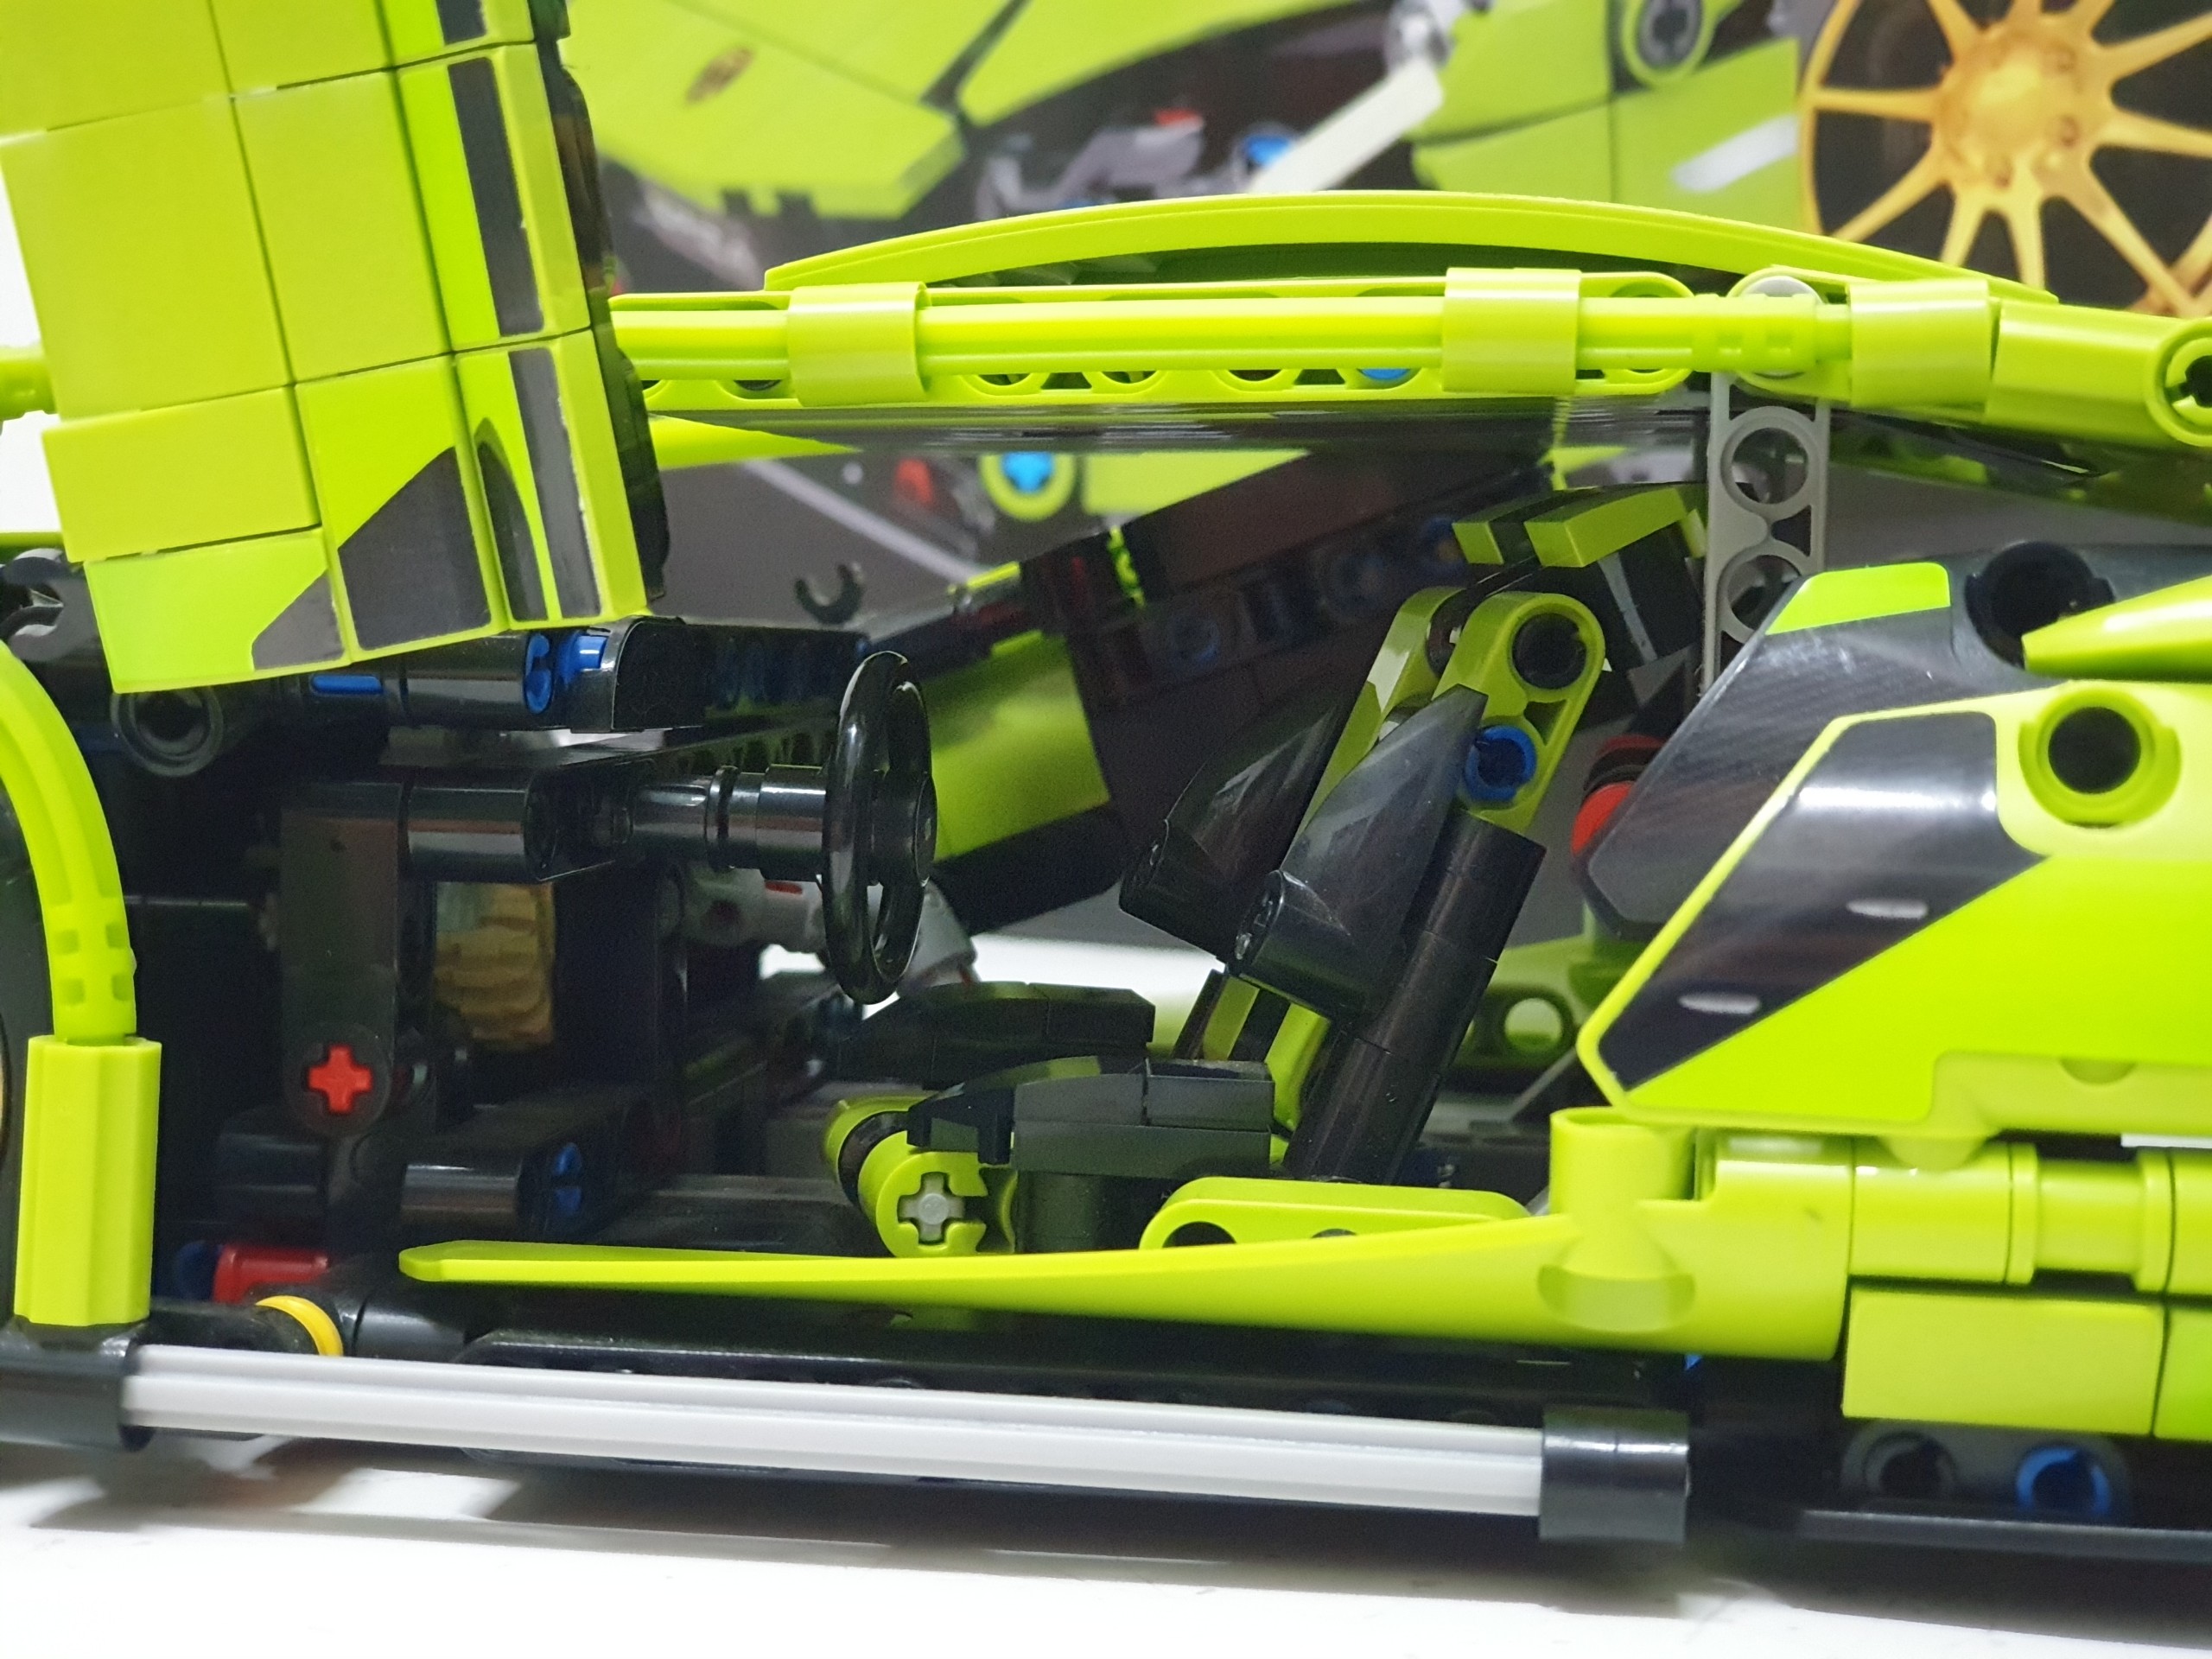 Đồ chơi lắp ghép  mô hình Xe Lamborghini Green - SY8600   ( Chọn phân loại hàng)